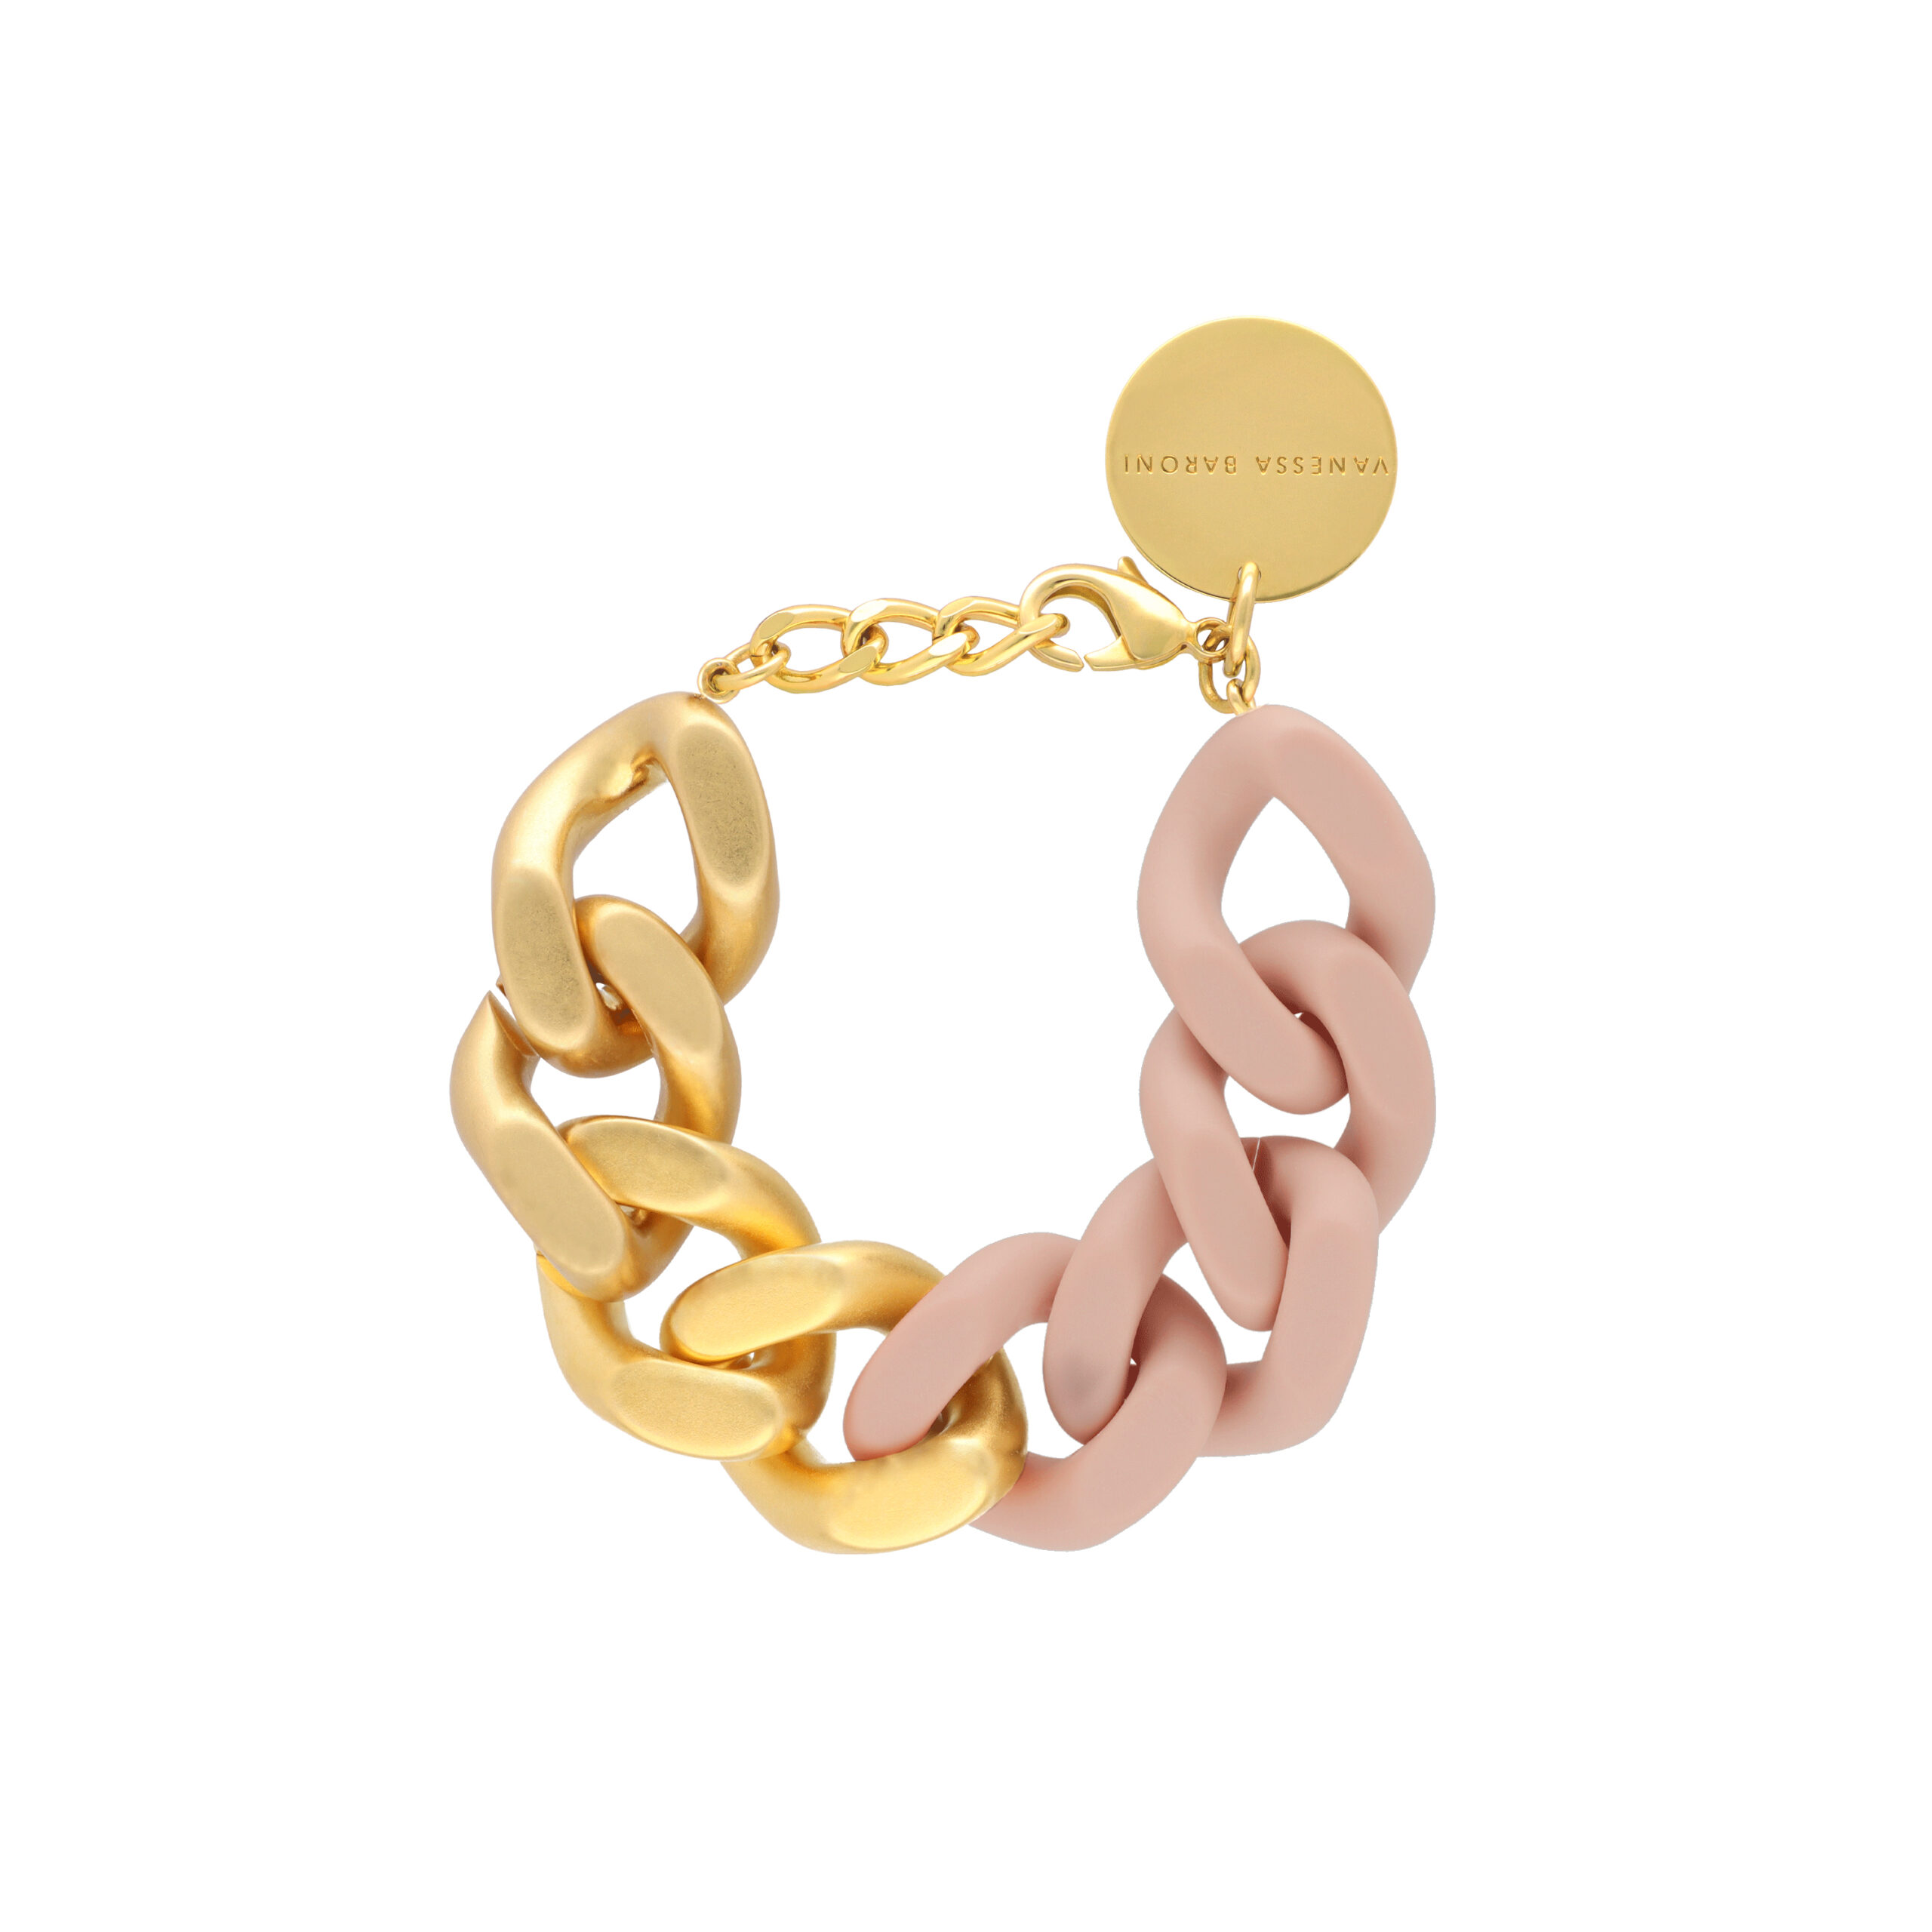 Bracelet Great Matt – Baby Rose Gold